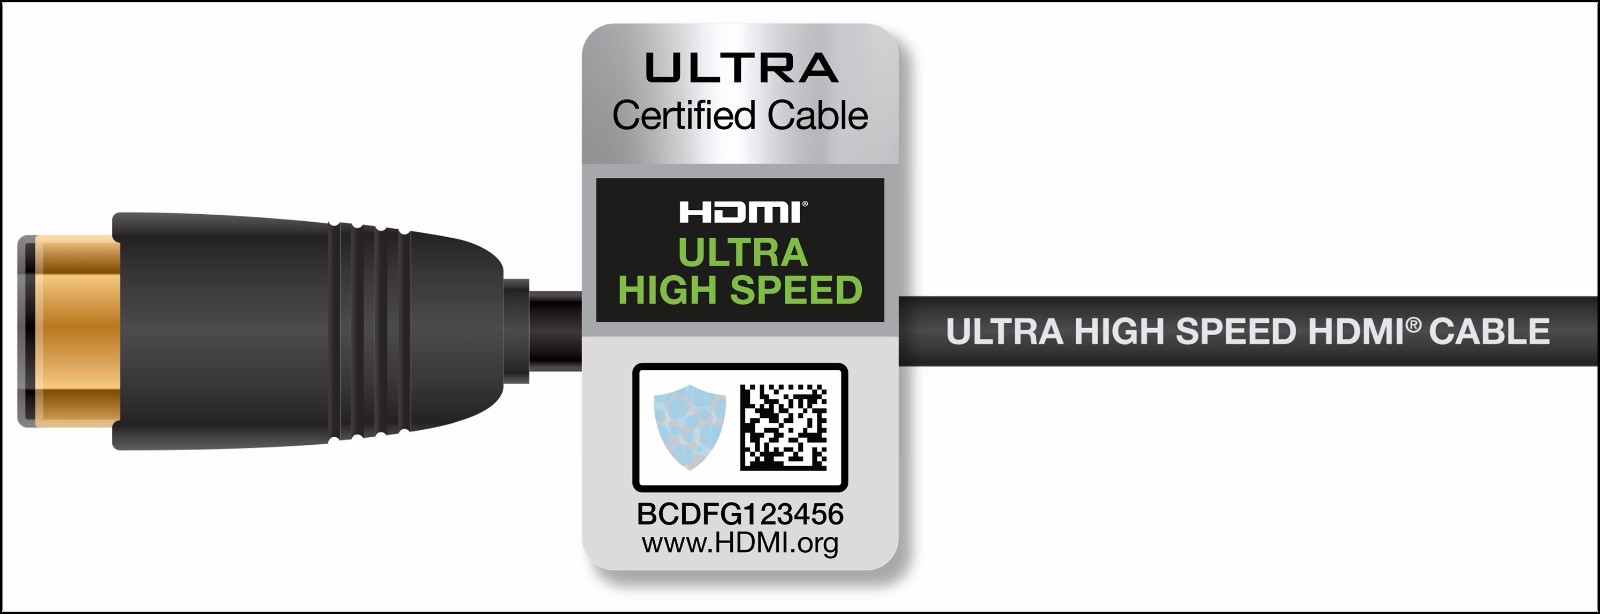 超高速 HDMI 线缆和认证标签.jpg